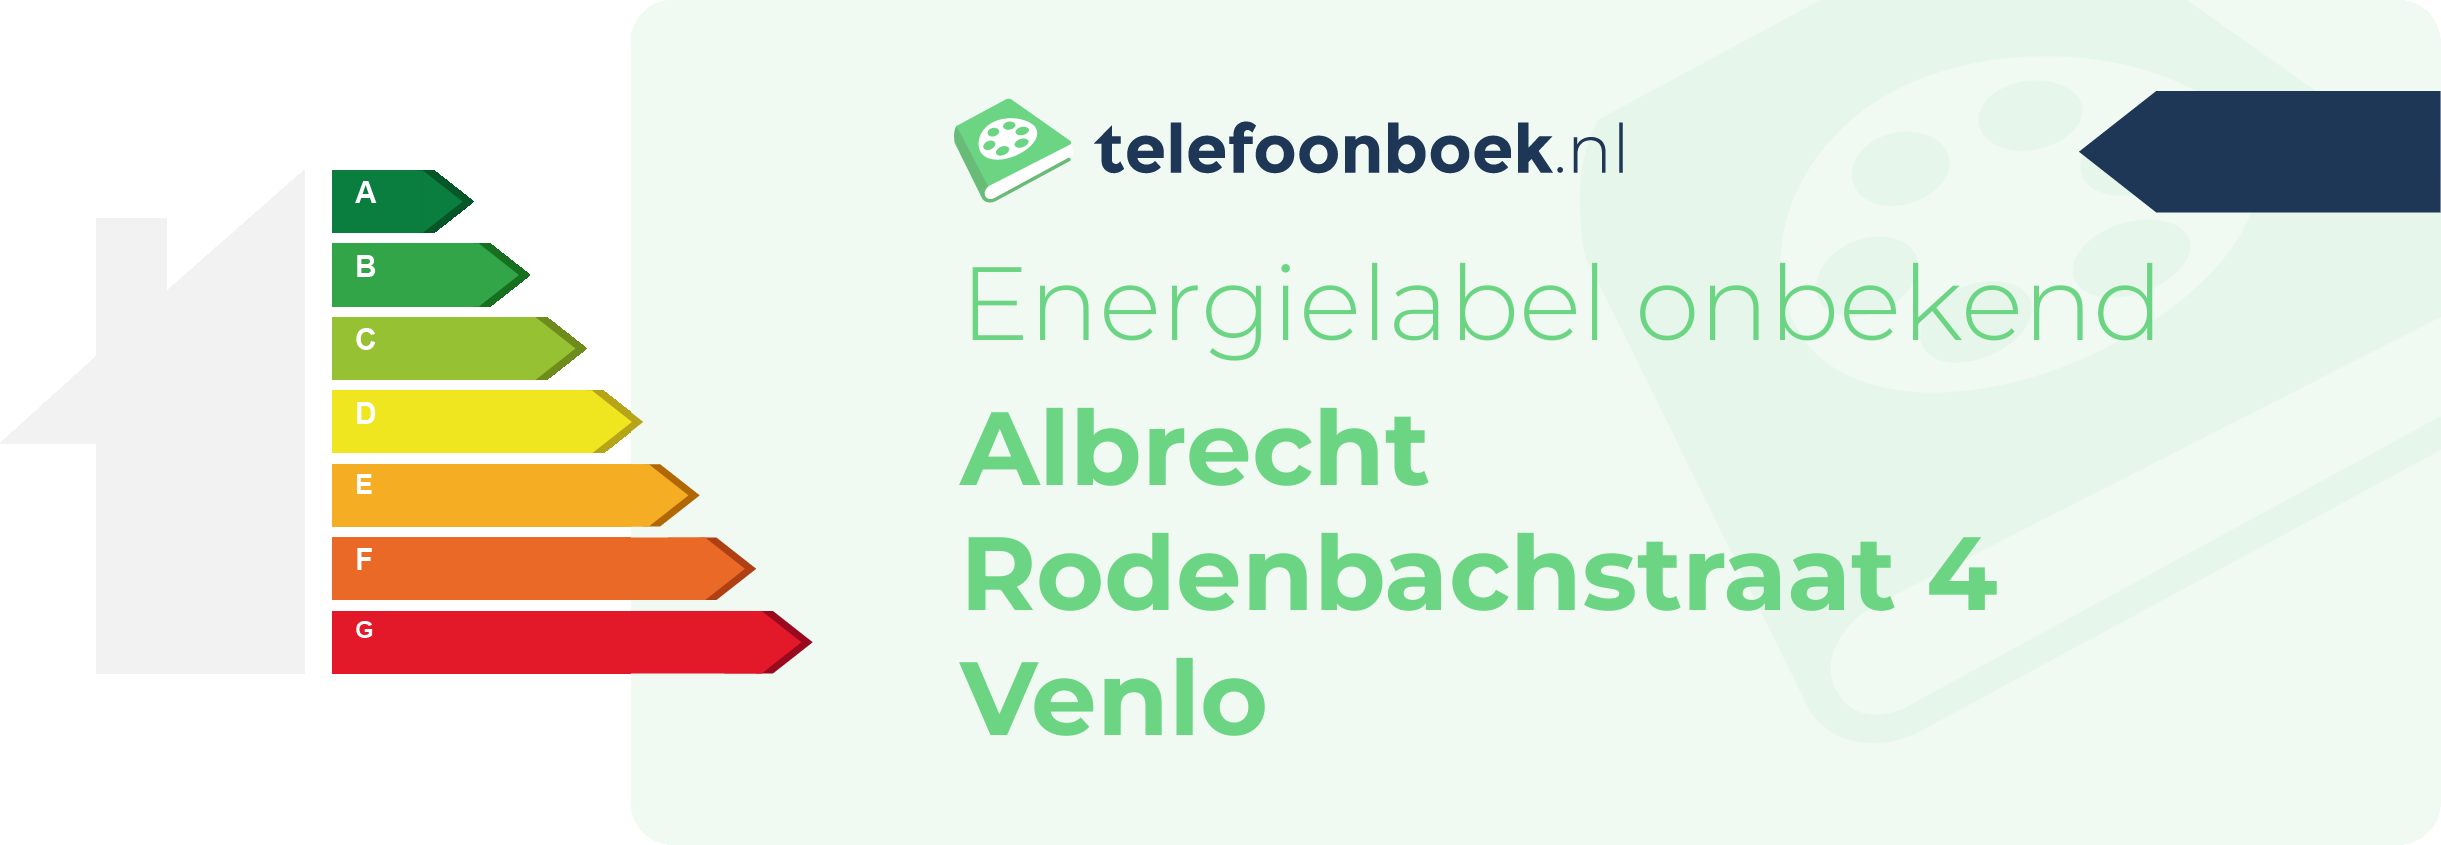 Energielabel Albrecht Rodenbachstraat 4 Venlo